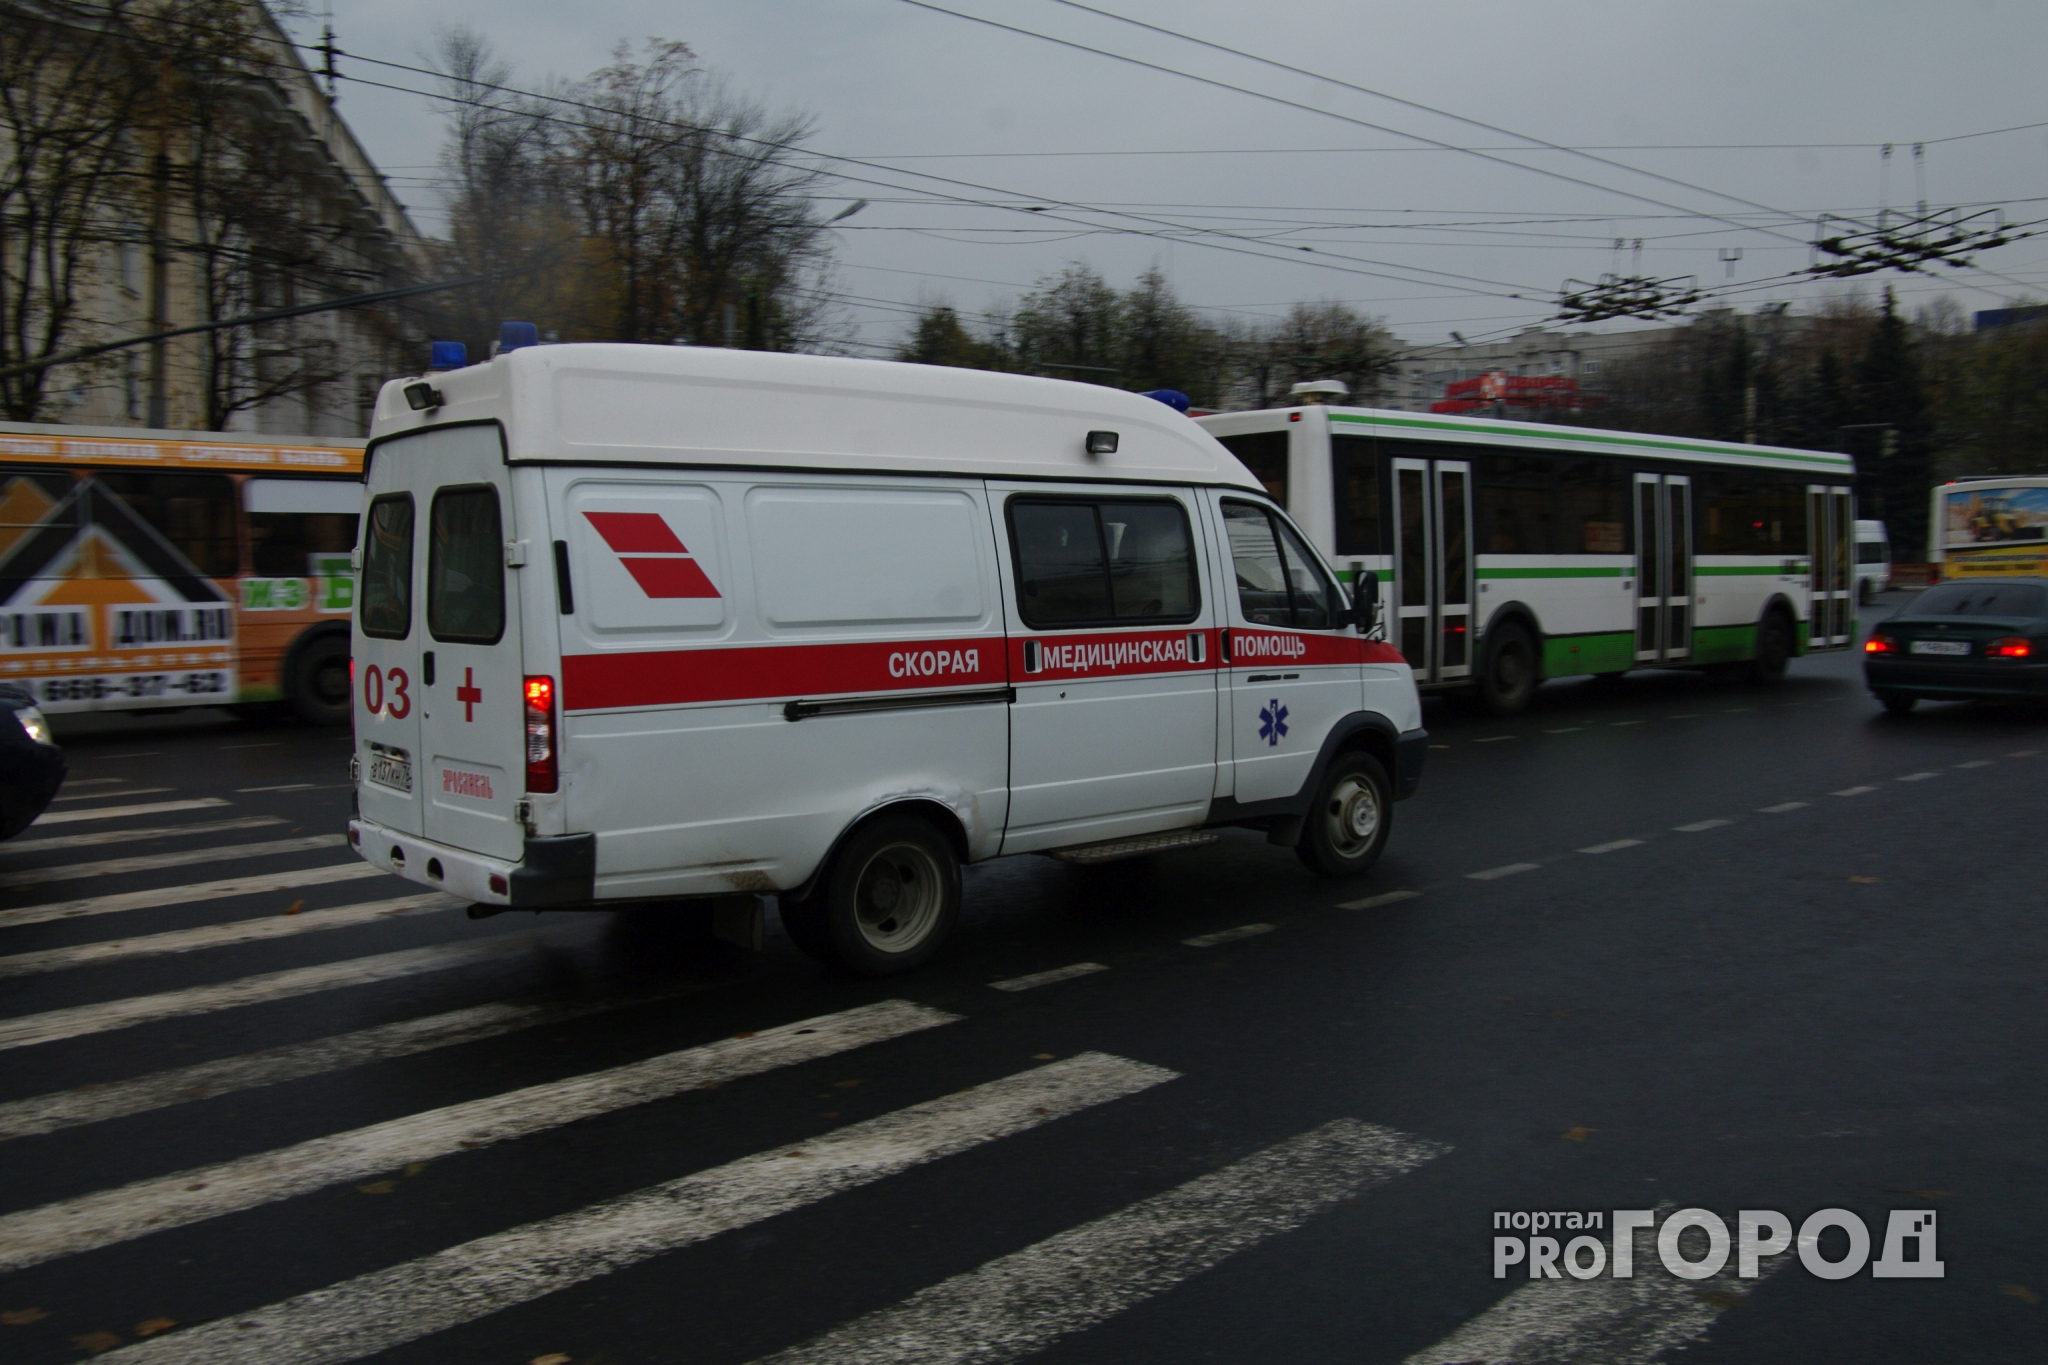 Одно из предприятий Нижегородской области оштрафовано за травму сотрудника